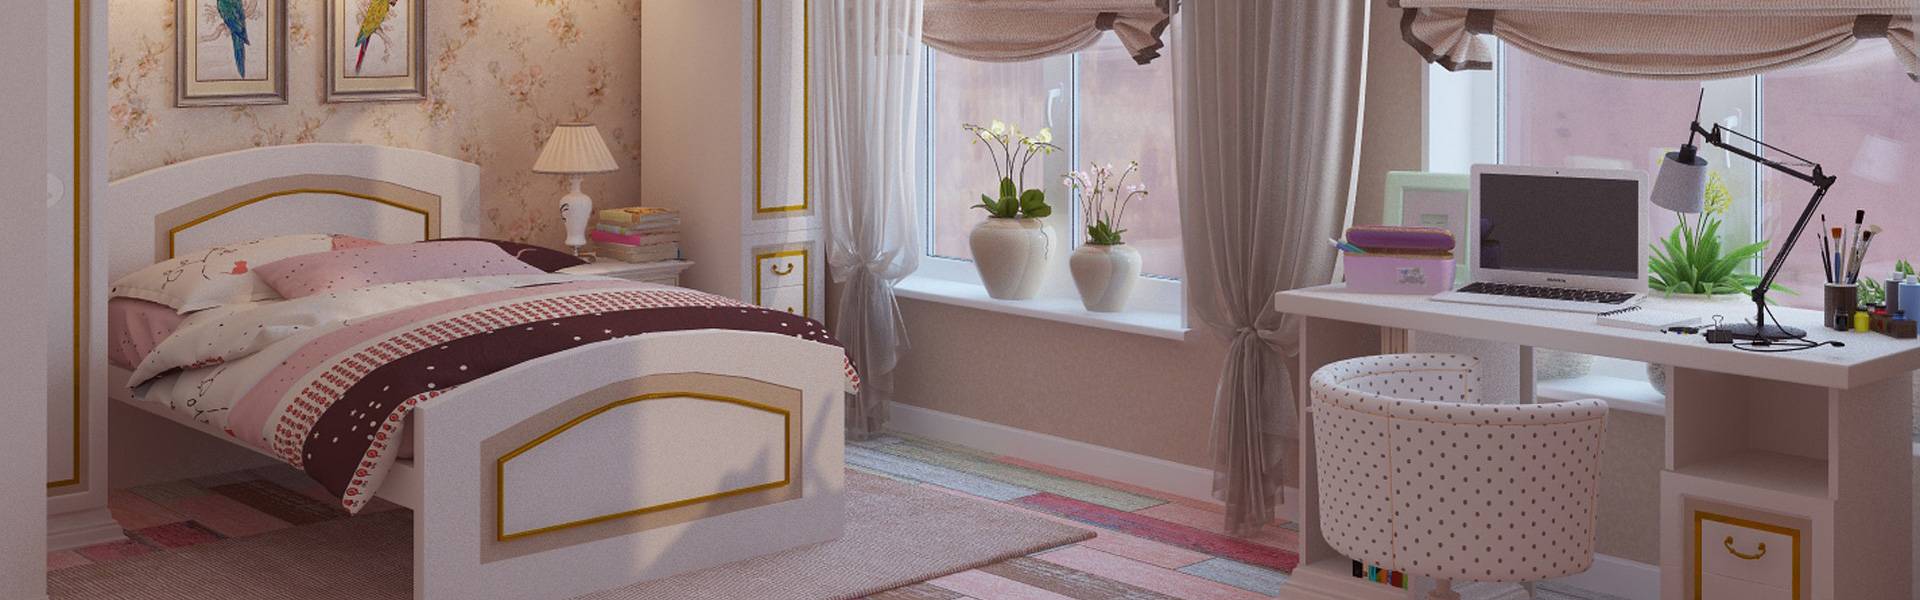 Дизайн спальни для девушки-подростка - мебель, обои в современном стиле